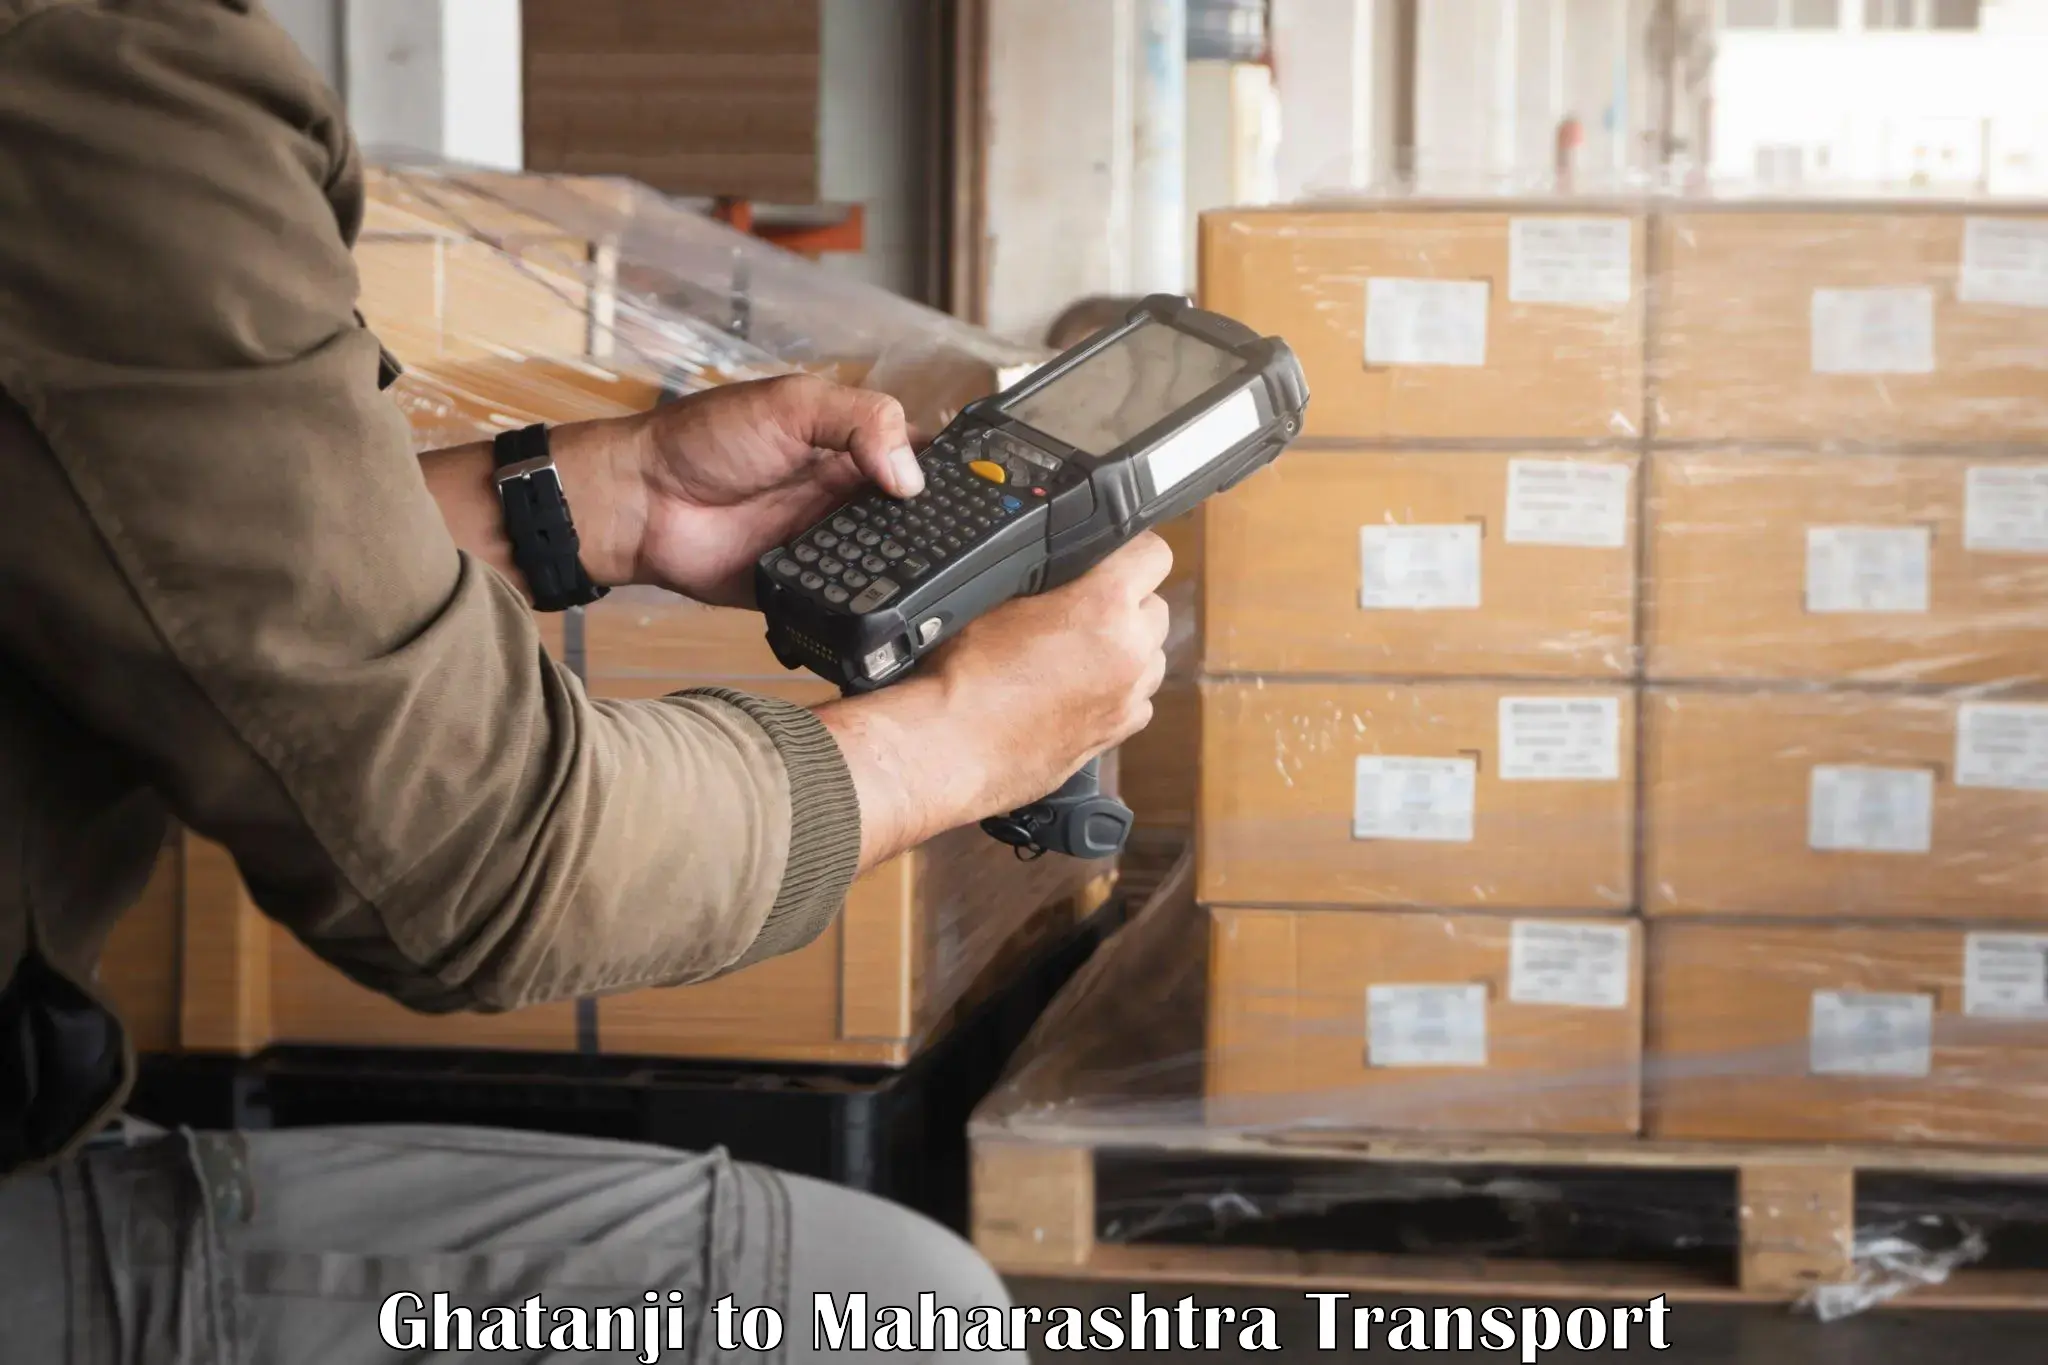 Online transport service Ghatanji to Ulhasnagar